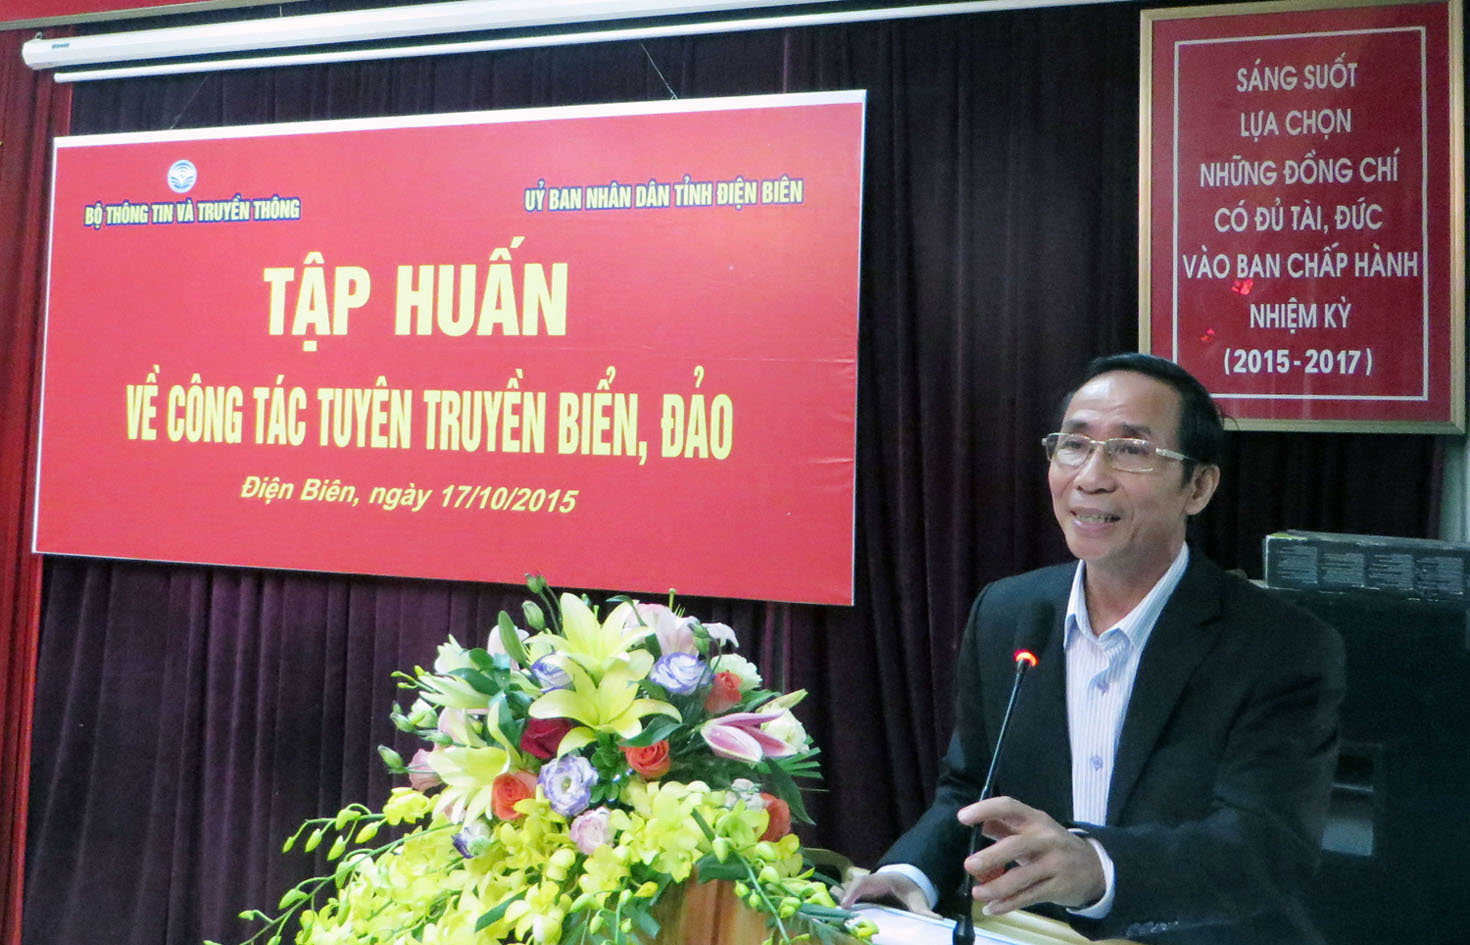 Trung tướng Nguyễn Thanh Tuấn, nguyên Cục trưởng Cục Tuyên huấn, Tổng Cục Chính trị Quân đội nhân dân Việt Nam, trình bày chuyên đề 1 tại buổi tập huấn. Ảnh: Trọng Nghĩa